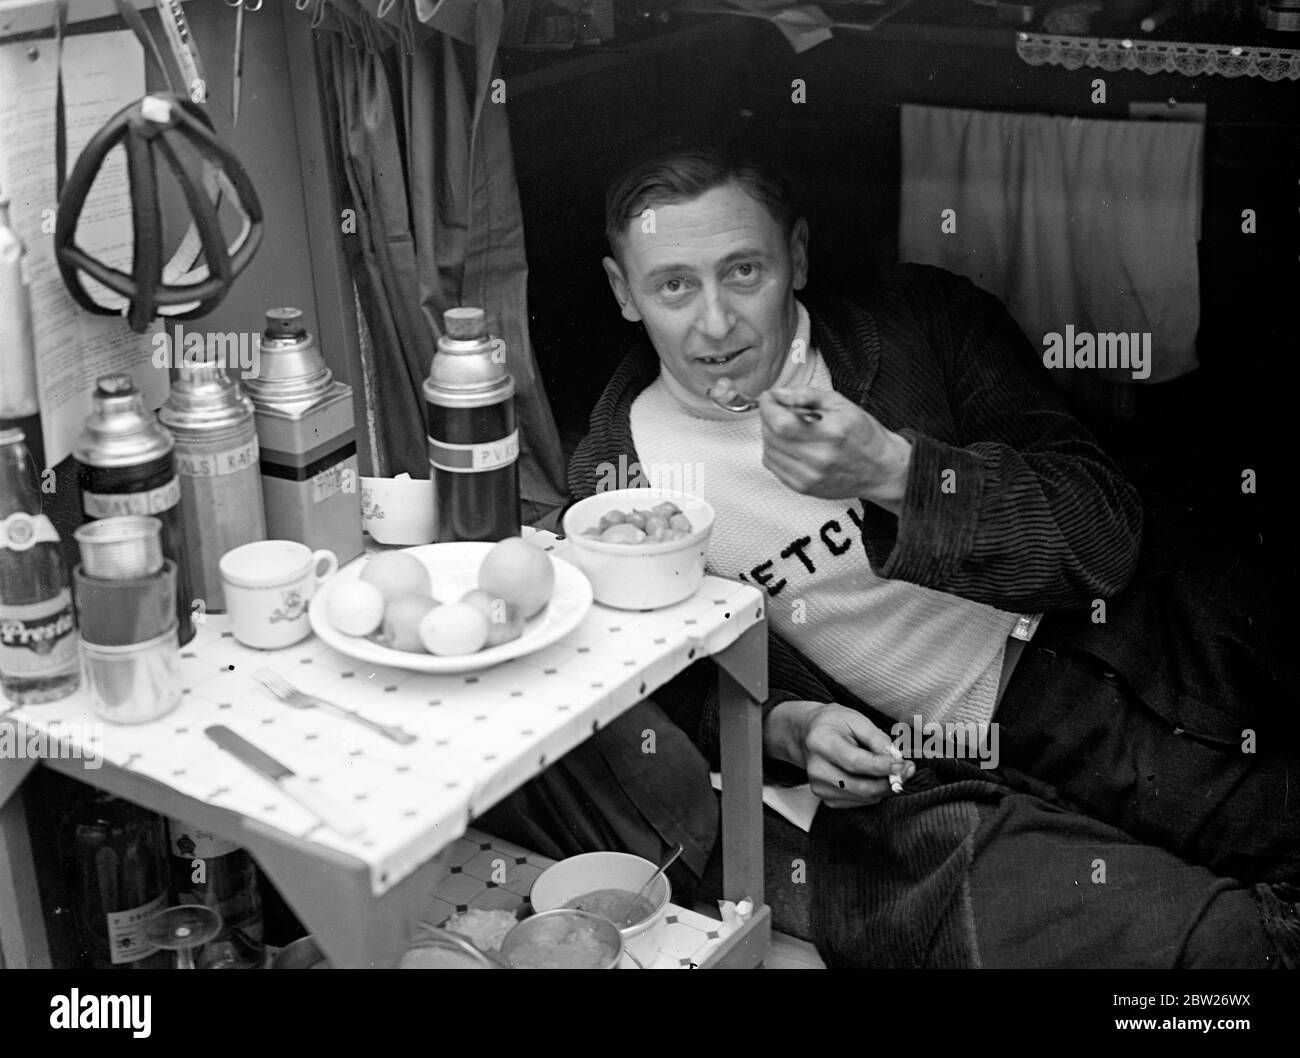 Frühstück im Bett bei einem 6-tägigen Radrennen. Das zweite sechs-Tage-Radrennen läuft im Empire Pool, Wembley, London, und ist wenige Minuten nach Mitternacht gestartet. Foto zeigt J Collard, Mechaniker des holländischen Teams, beim Frühstück im Bett. Mai 1938 Stockfoto